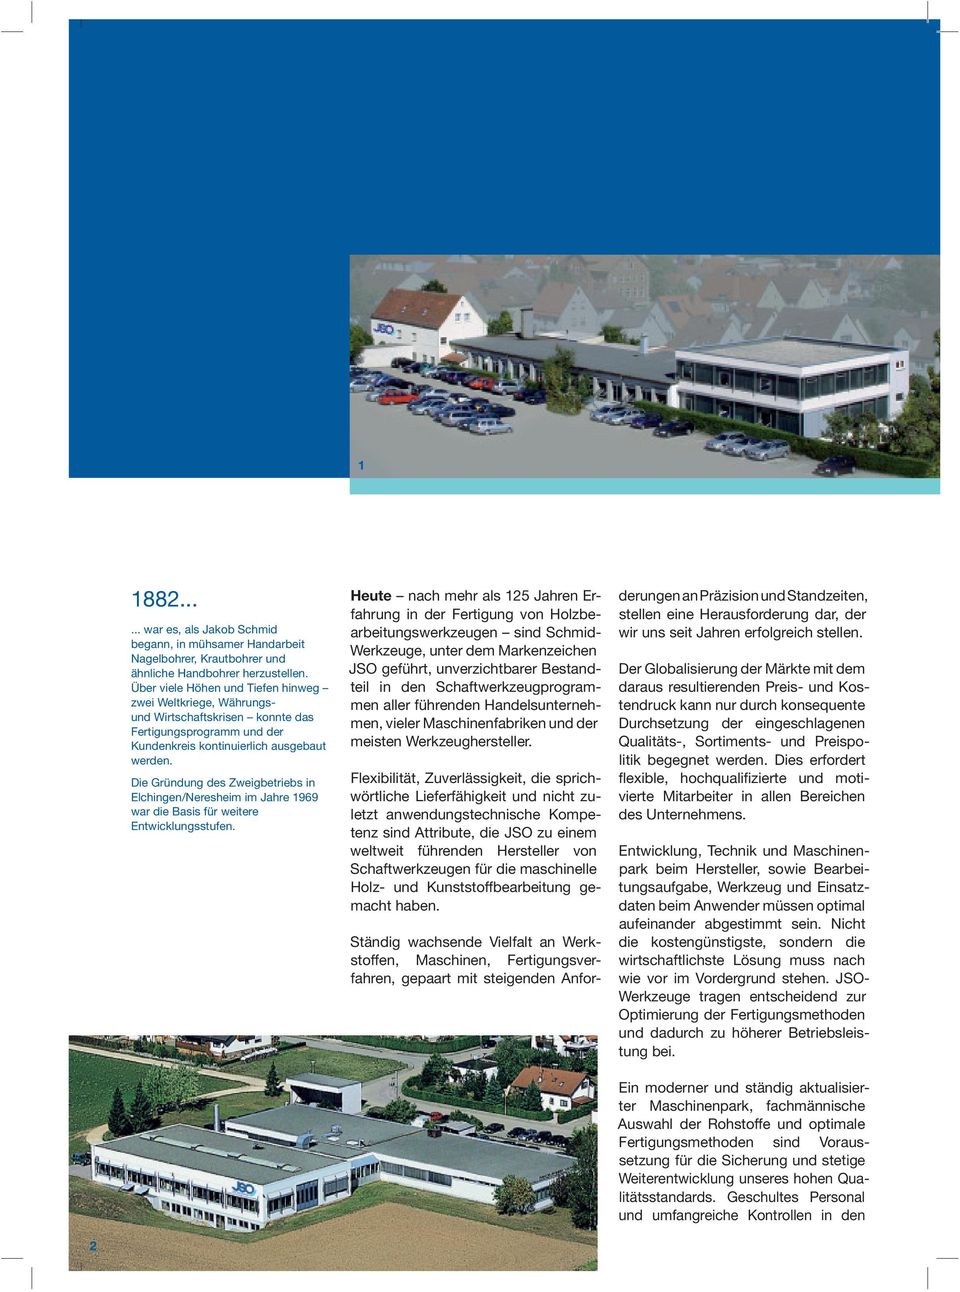 ie Gründung des Zweigbetriebs in Elchingen/Neresheim im Jahre 99 war die Basis für weitere Entwicklungsstufen.